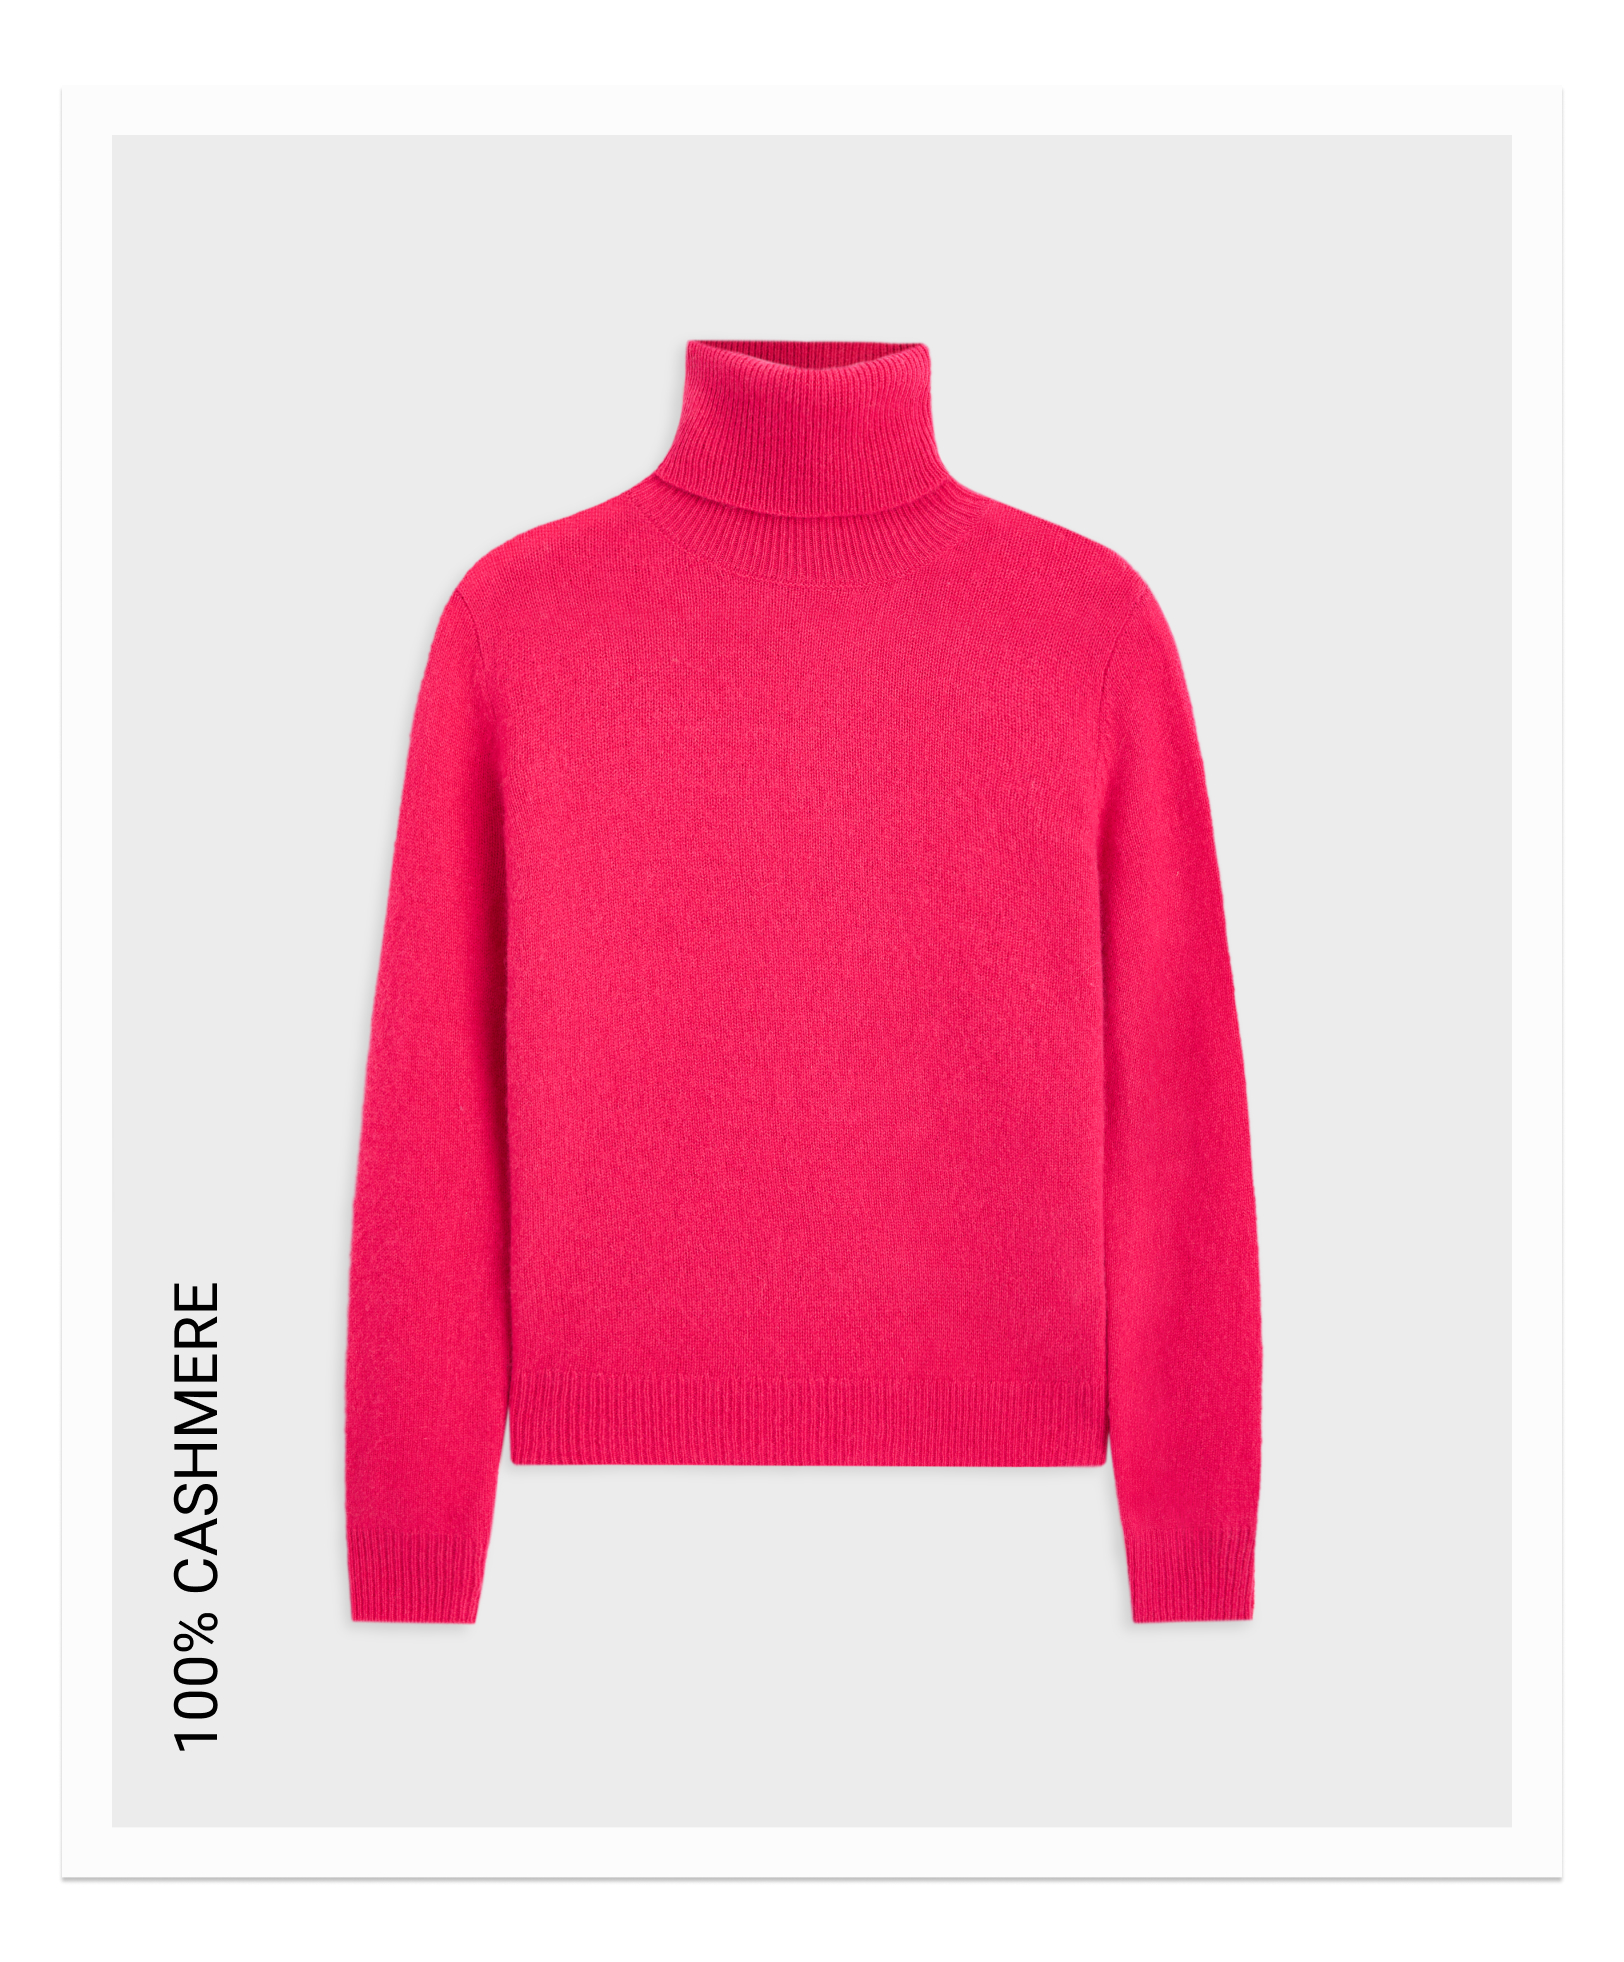 100% cashmere turtleneck sweater